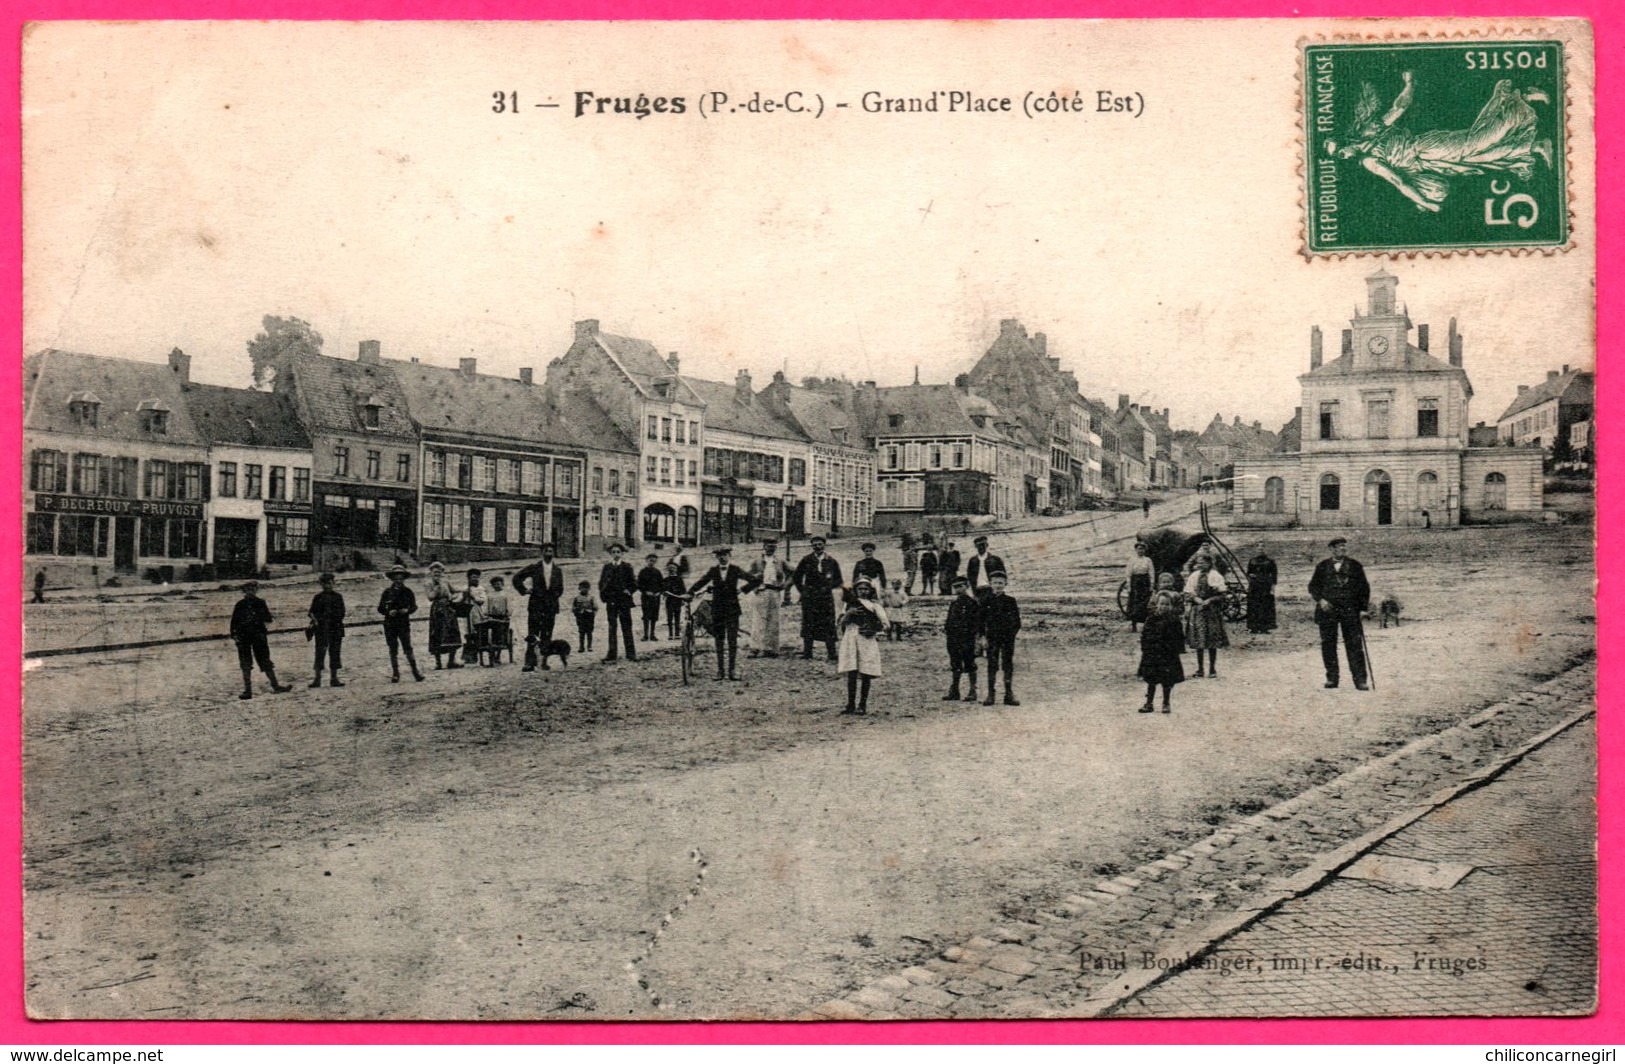 Fruges - Grand'Place - Côté Est - Commerce P. DECREQUY PRUVOST - Animée - Imp. Edit. PAUL BOULANGER - 1915 - Fruges